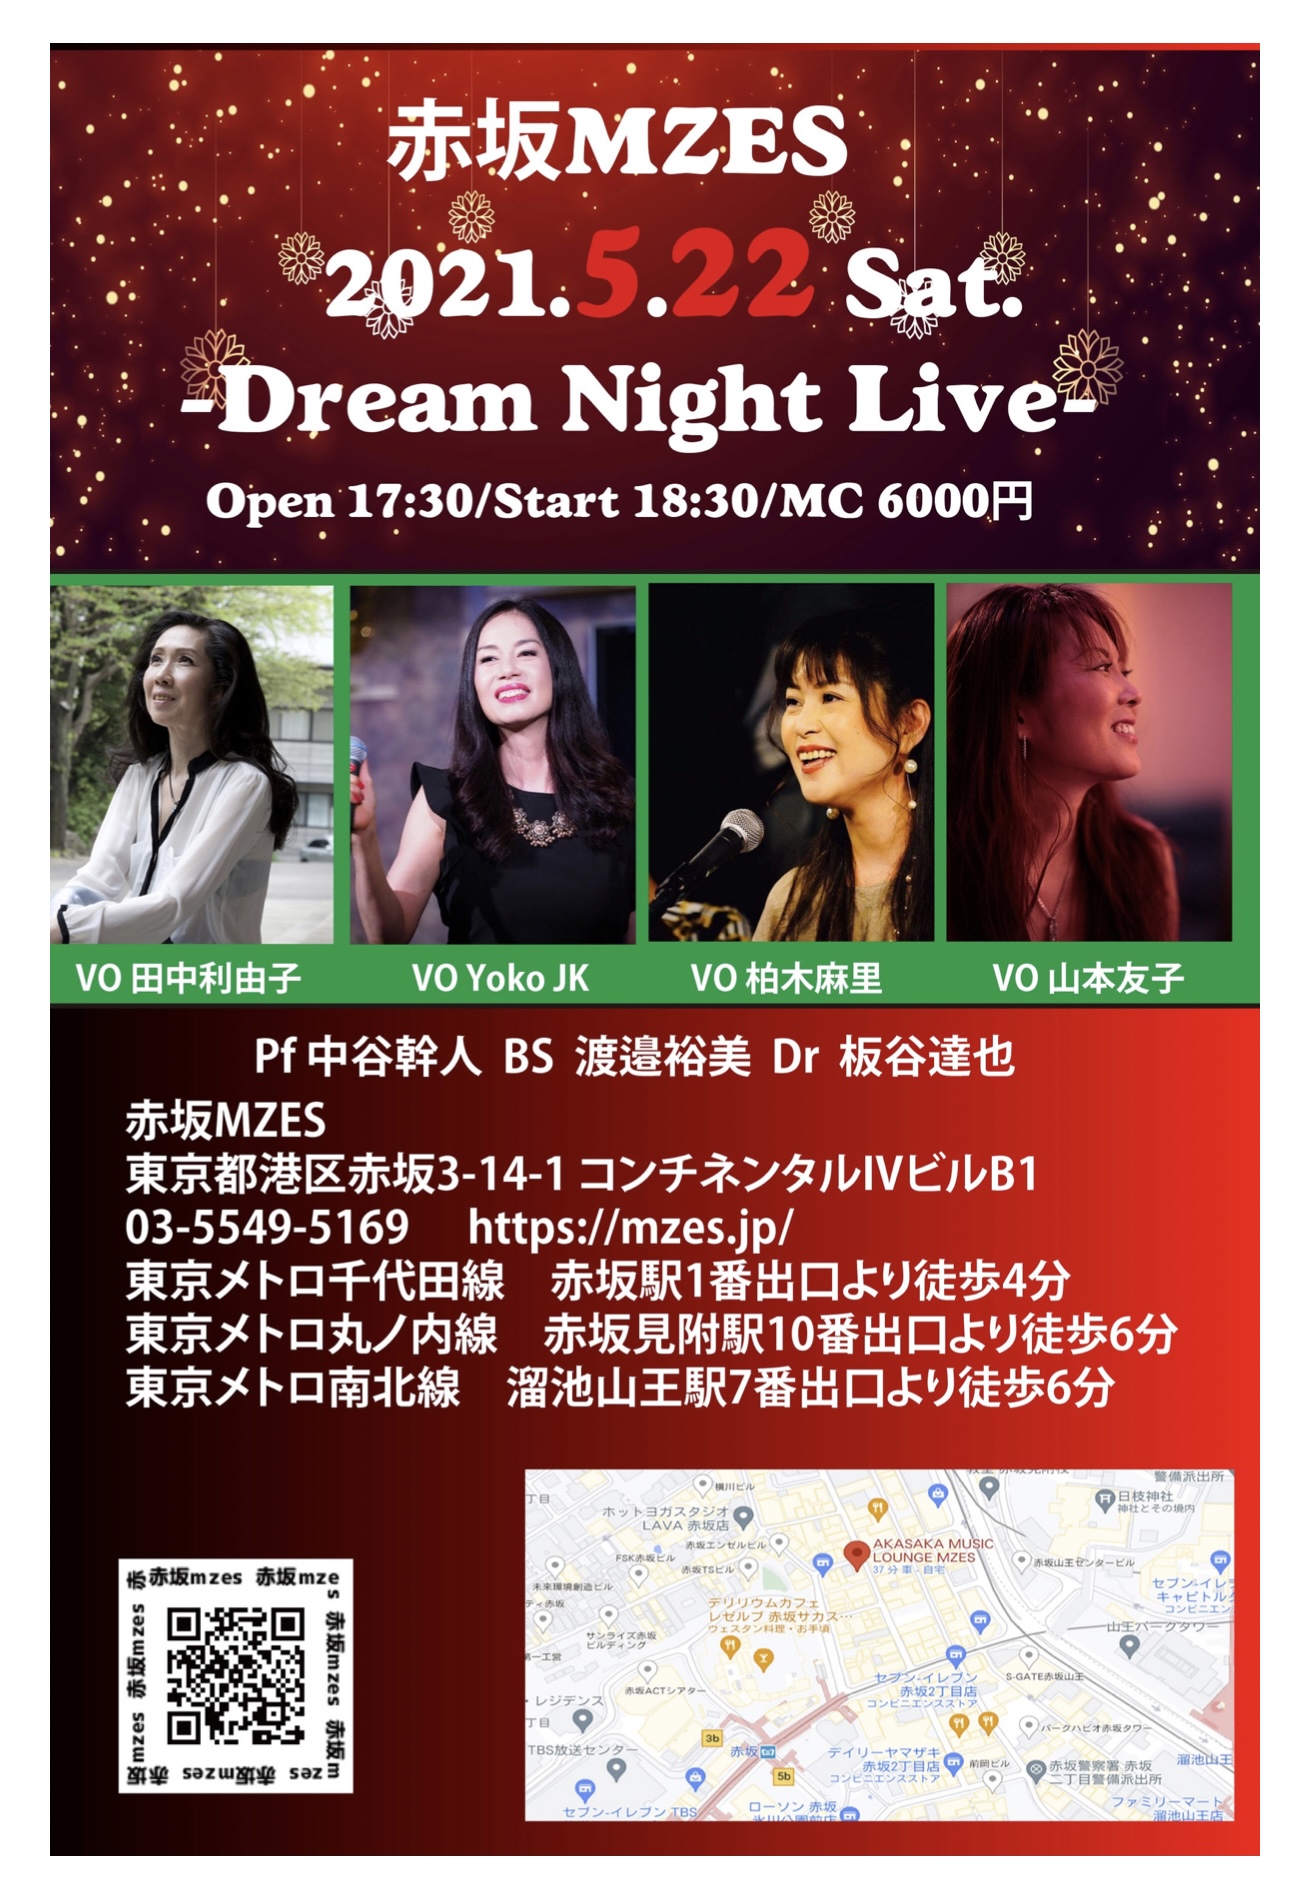 【配信】Dream Night Live